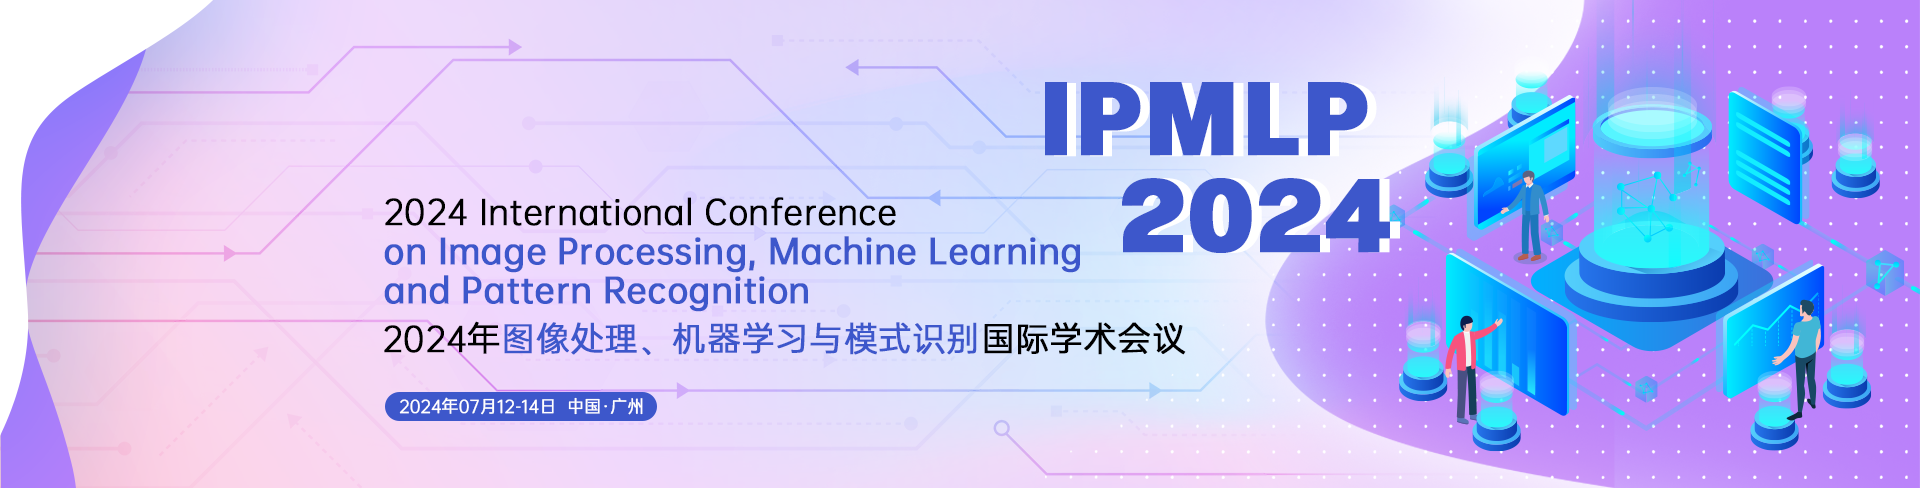 IPMLP 2024 会议官网中文.png